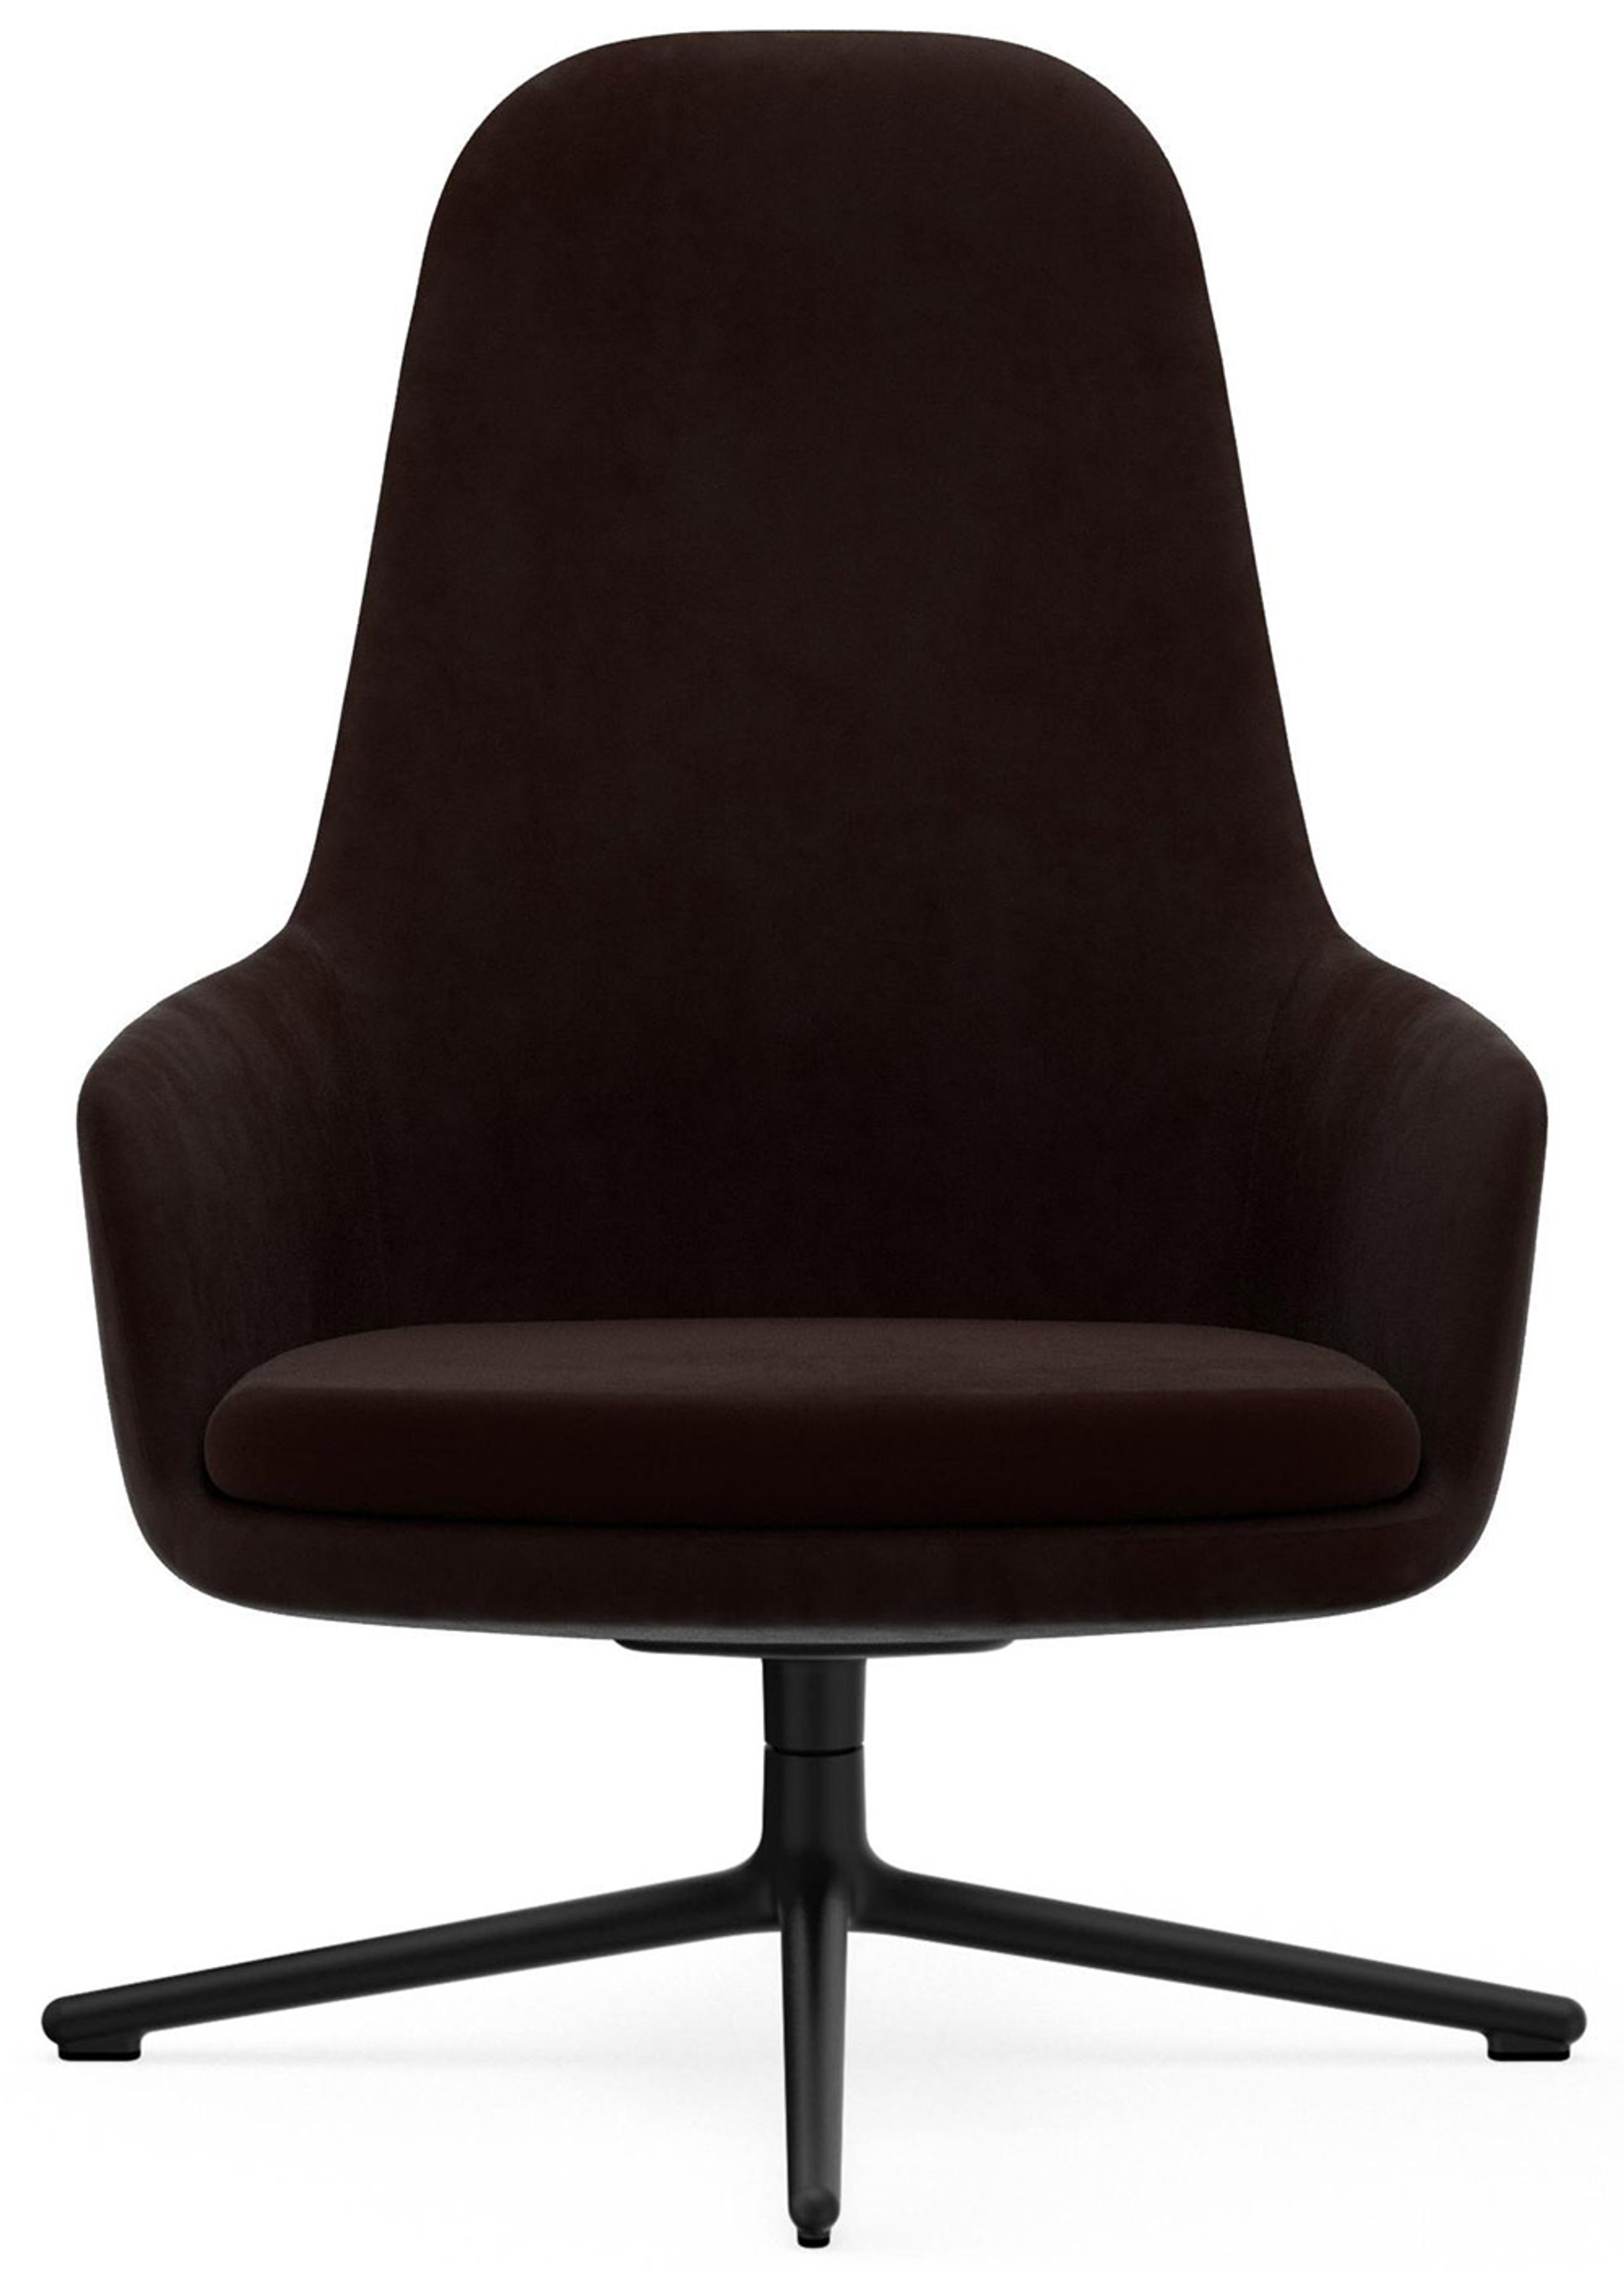 Normann Copenhagen - Poltrona - Era Lounge Chair High Swivel - Black Alu Frame / Fabric: City Velvet